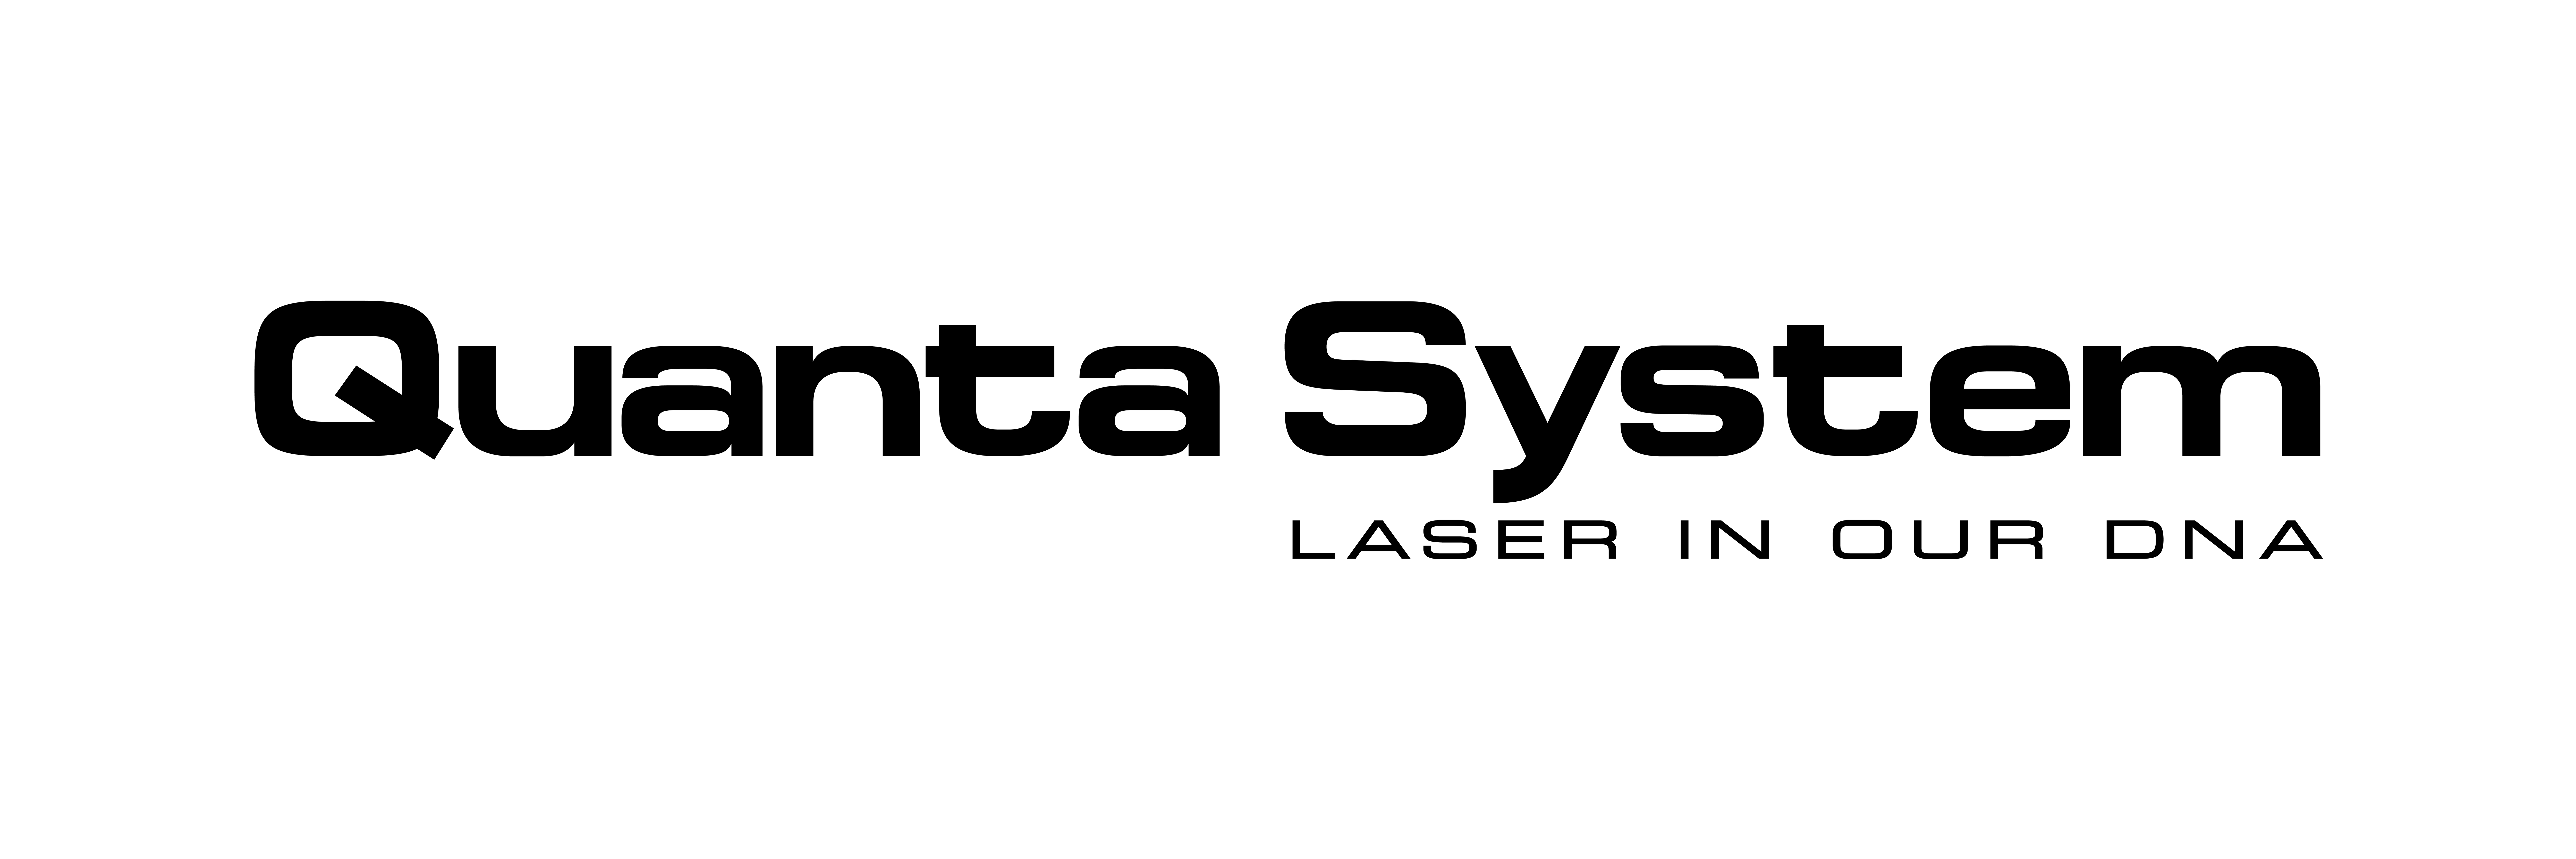 quanta_system logo